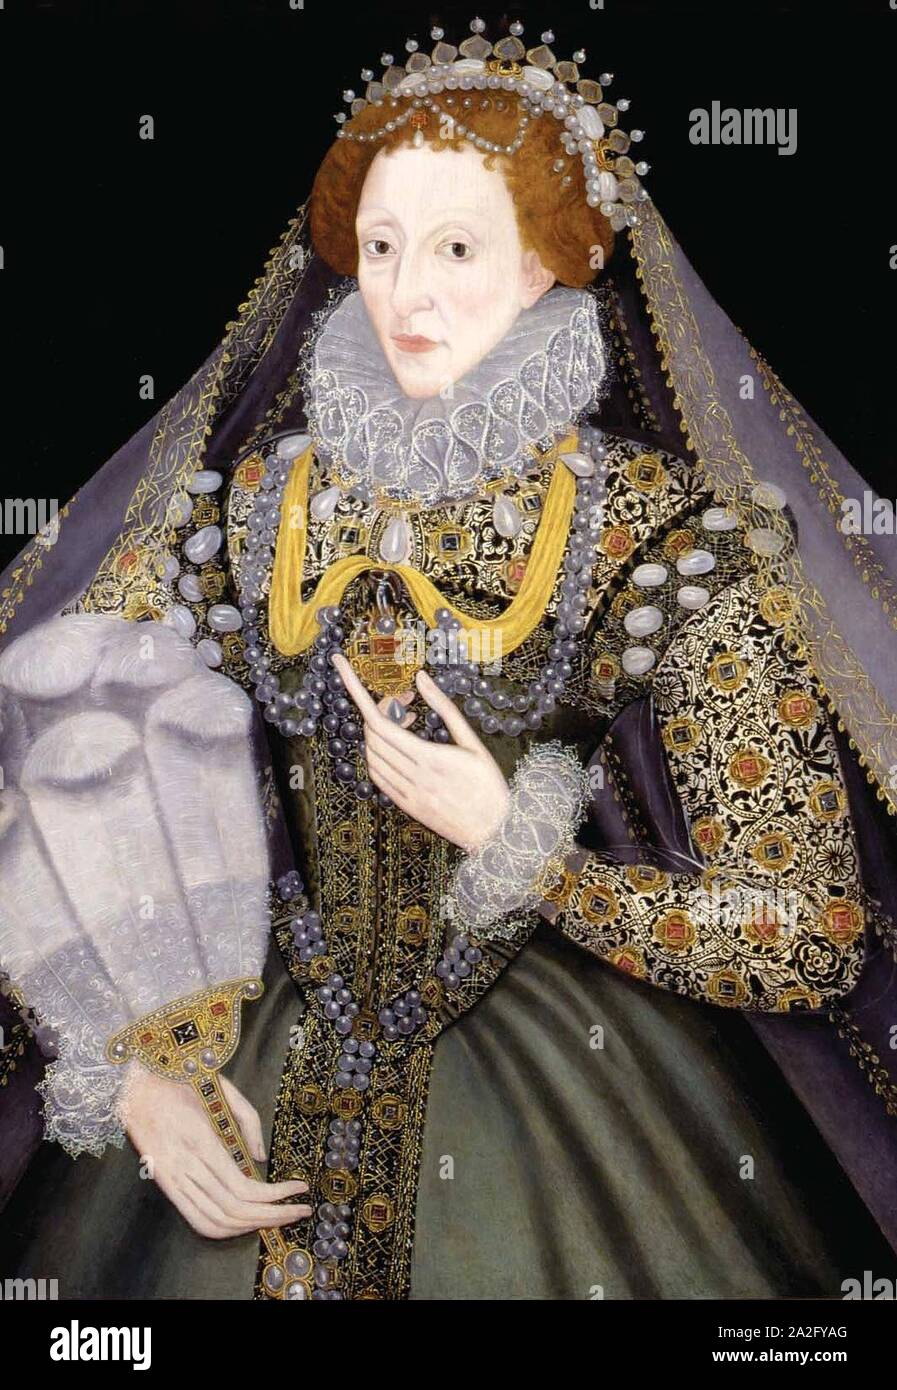 Elizabeth I Artista desconocido1570s. Foto de stock